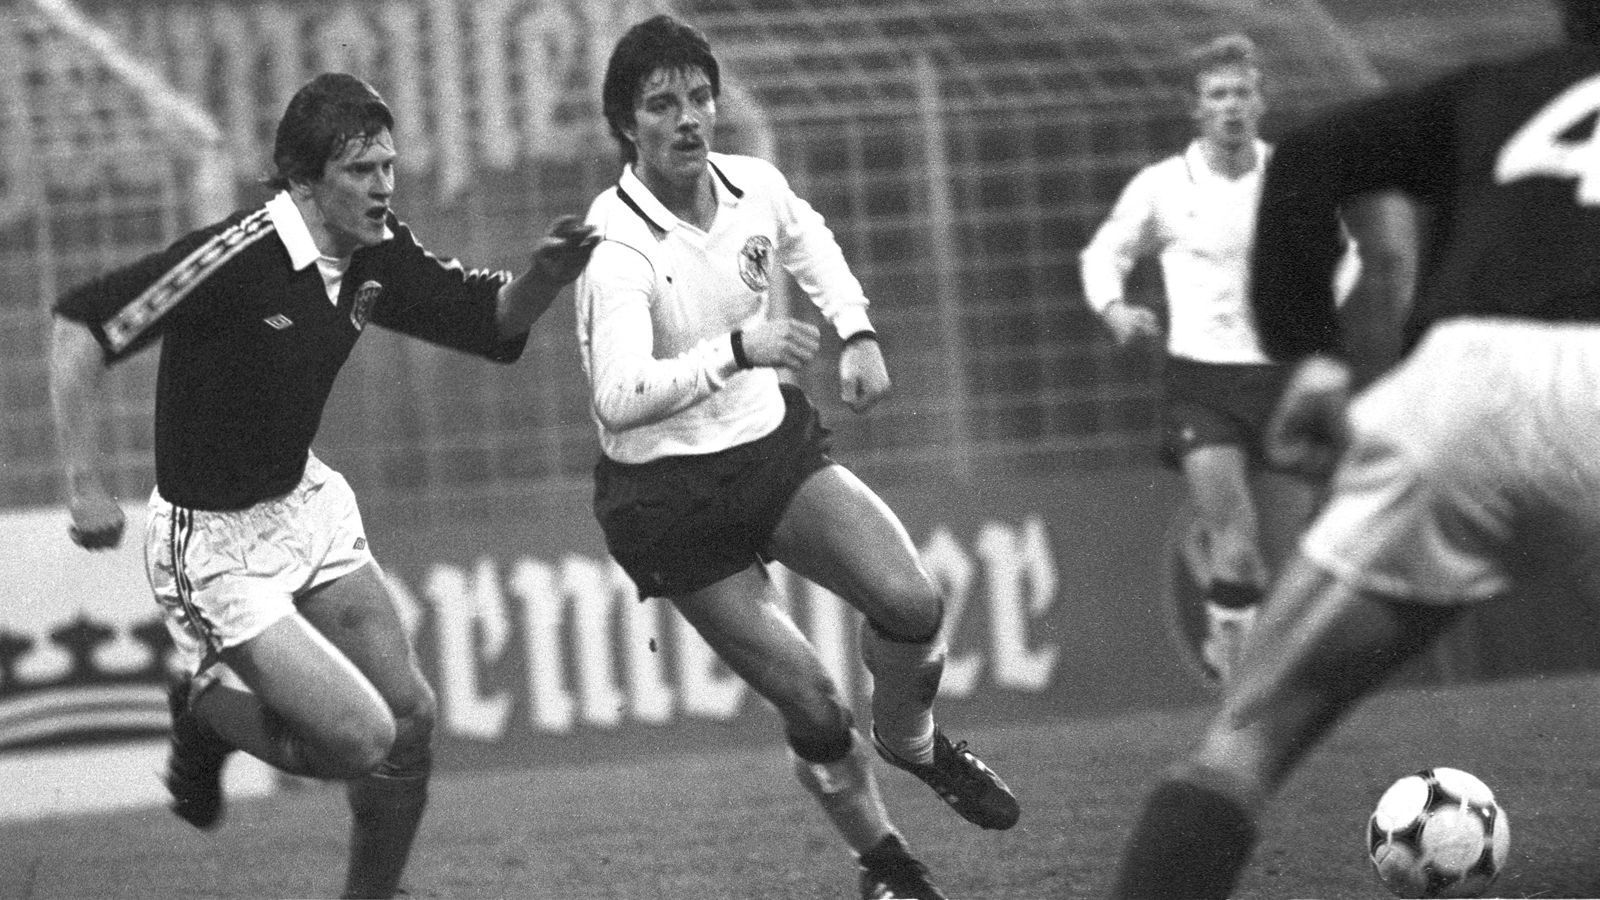 
                <strong>Löw mit U21-Geschichte</strong><br>
                Auch Bundestrainer Joachim Löw hat U21-Geschichte: Der einstige Mittelstürmer feierte sein Debüt für die Mannschaft ebenfalls beim ersten Spiel des Teams in Polen im Oktober 1979. Nach vier Einsätzen war seine U21-Zeit aber auch wieder vorbei.
              